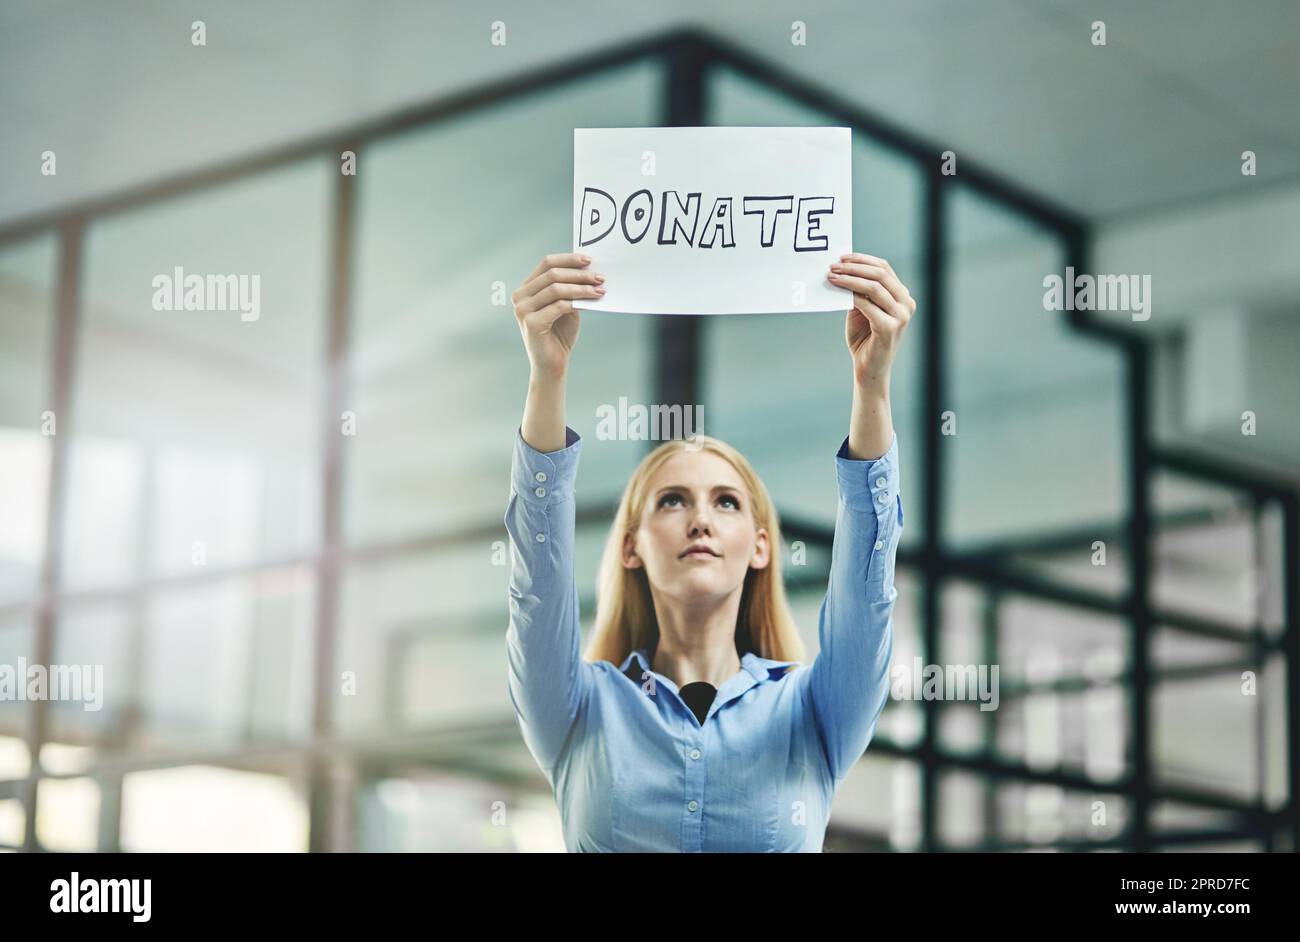 Spenden, wohltätige Zwecke und Spendenaktionen, während Sie ein Plakat in der Hand halten und um Hilfe und Unterstützung in der Unternehmenszentrale bitten. Eine Frau aus der Geschäftswelt und eine gemeinnützige Stiftung, die um Hilfe aus der Gemeinde bittet Stockfoto